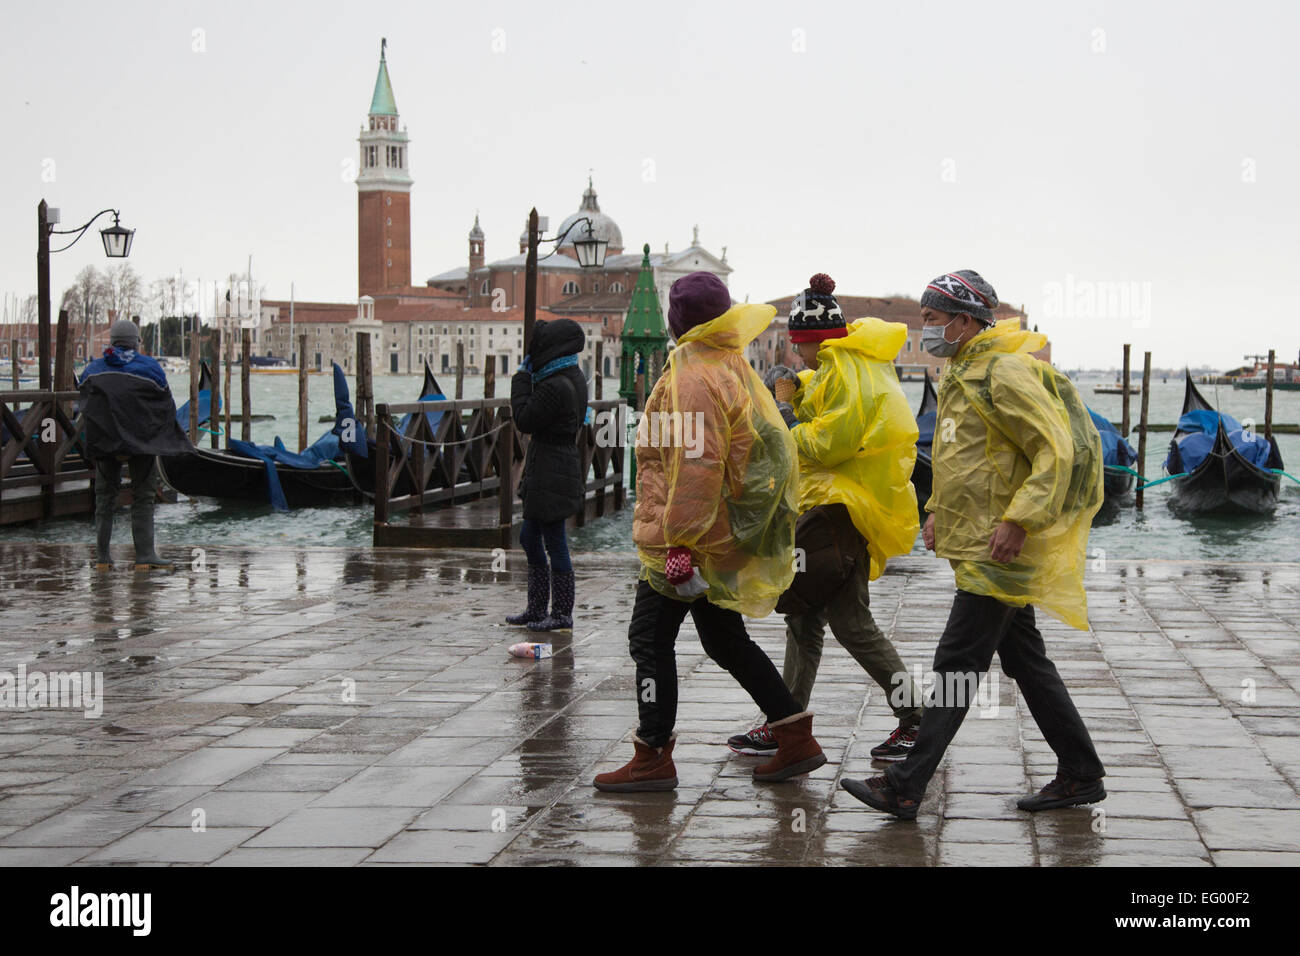 Als der jährliche Karneval feiern losgehen, in Venedig, Hochwasser (Acqua Alta) viele Teile der Stadt überflutet. Viele Touristen wurden von den hohen Wassergehalt ertappt und musste kaufen verstärkten Kunststoff Stiefel in leuchtenden Farben - die über normale Schuhe - getragen werden, trocken zu halten. Besseres Wetter für den Karneval in Markusplatz entfernt dieses Wochenende prognostiziert. Stockfoto